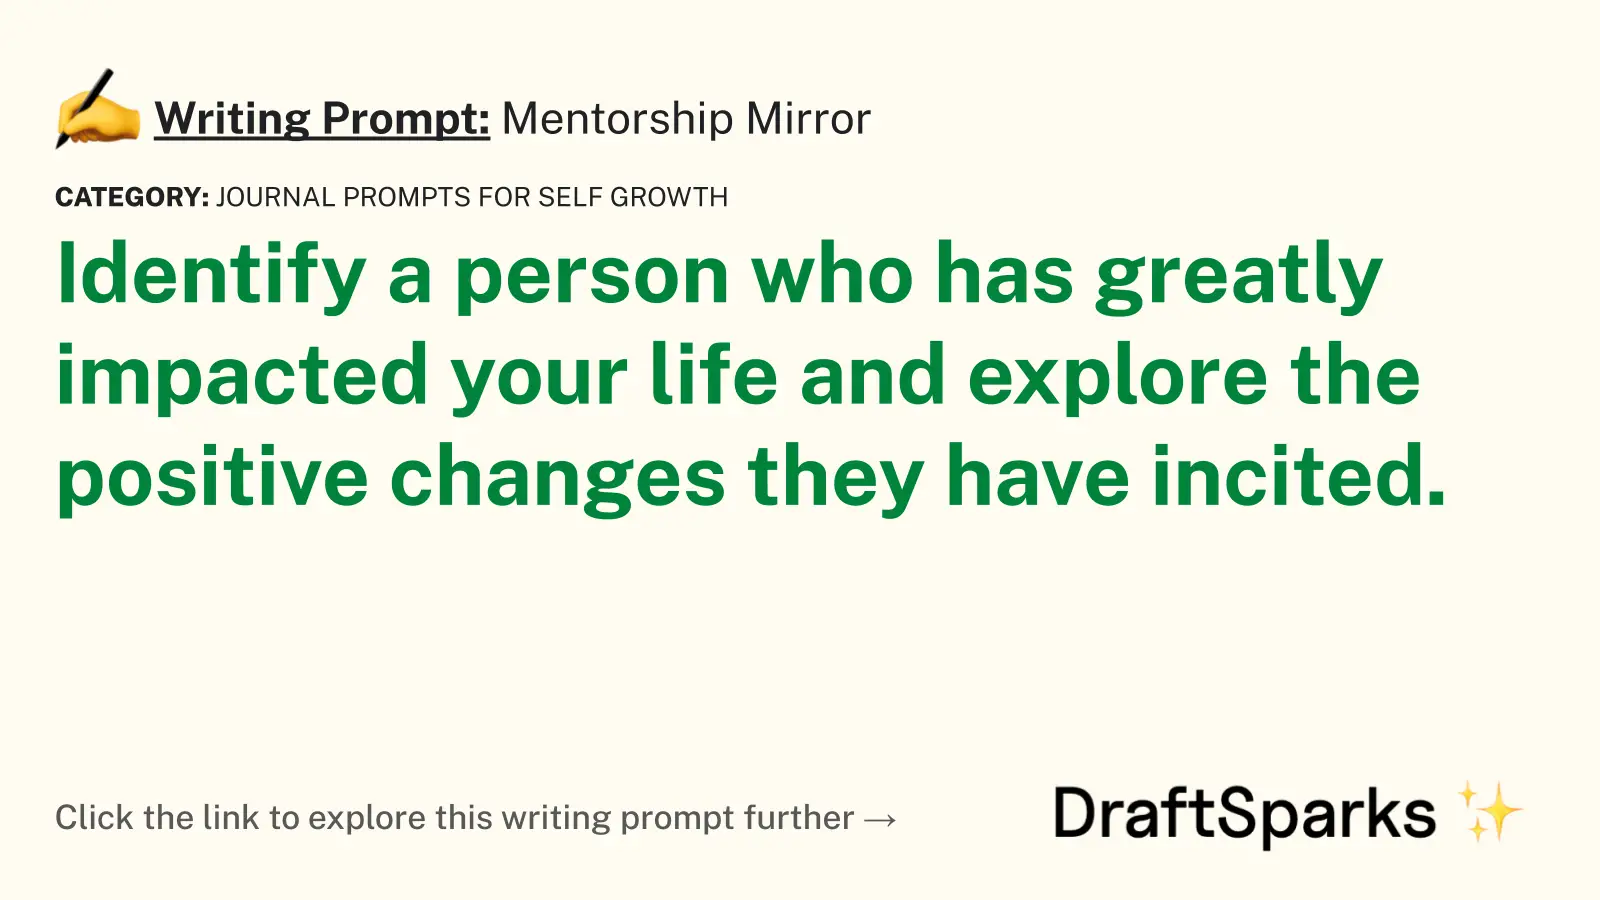 Mentorship Mirror